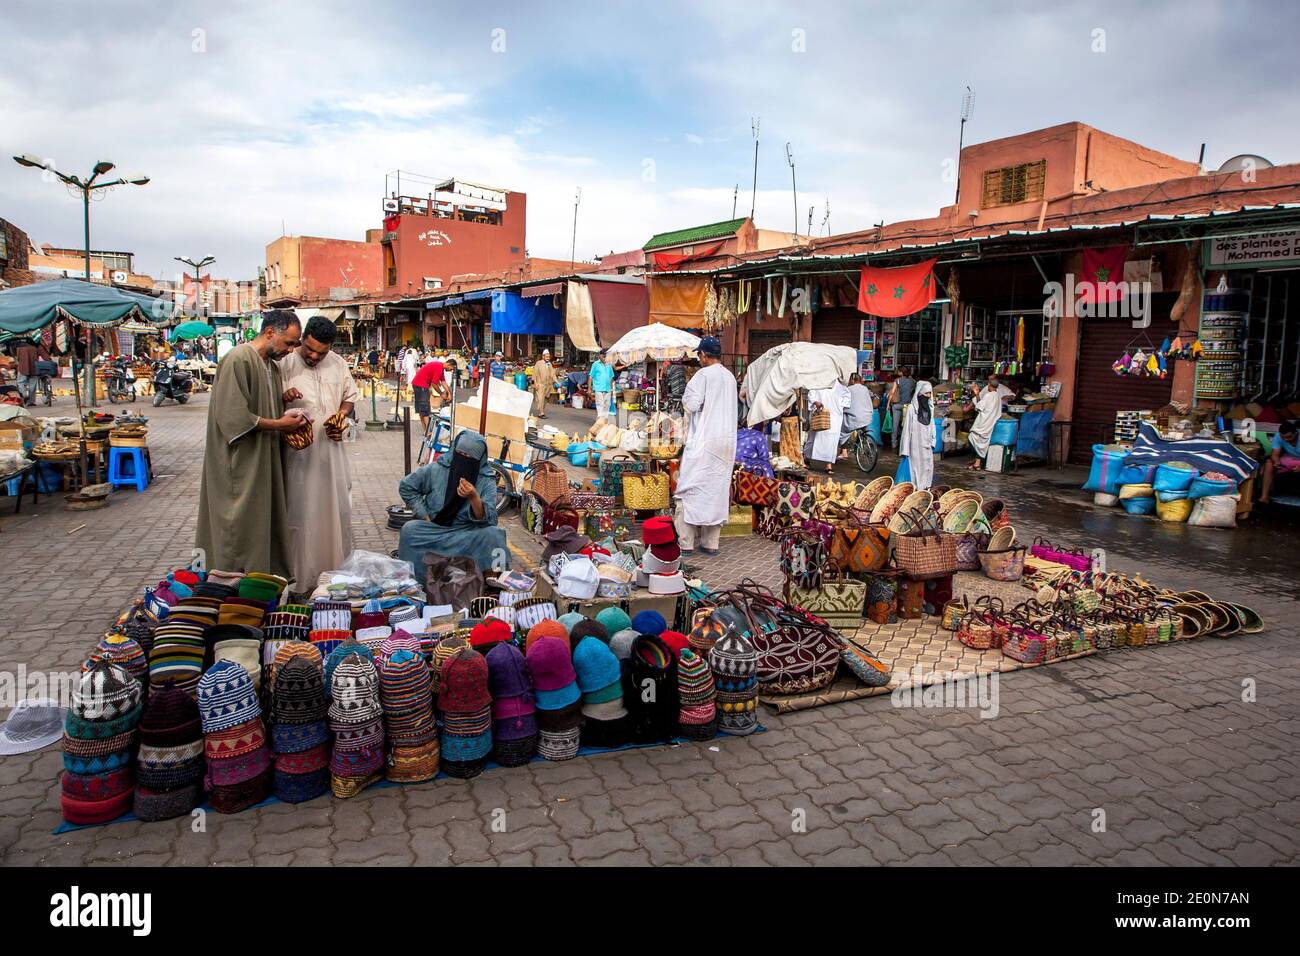 Bancarelle che vendono vari beni, tra cui cappelli e cesti nella medina di Marrakech in Marocco. Marrakech è stata fondata nel 1062 da Abu Bakr ibn Umar. Foto Stock